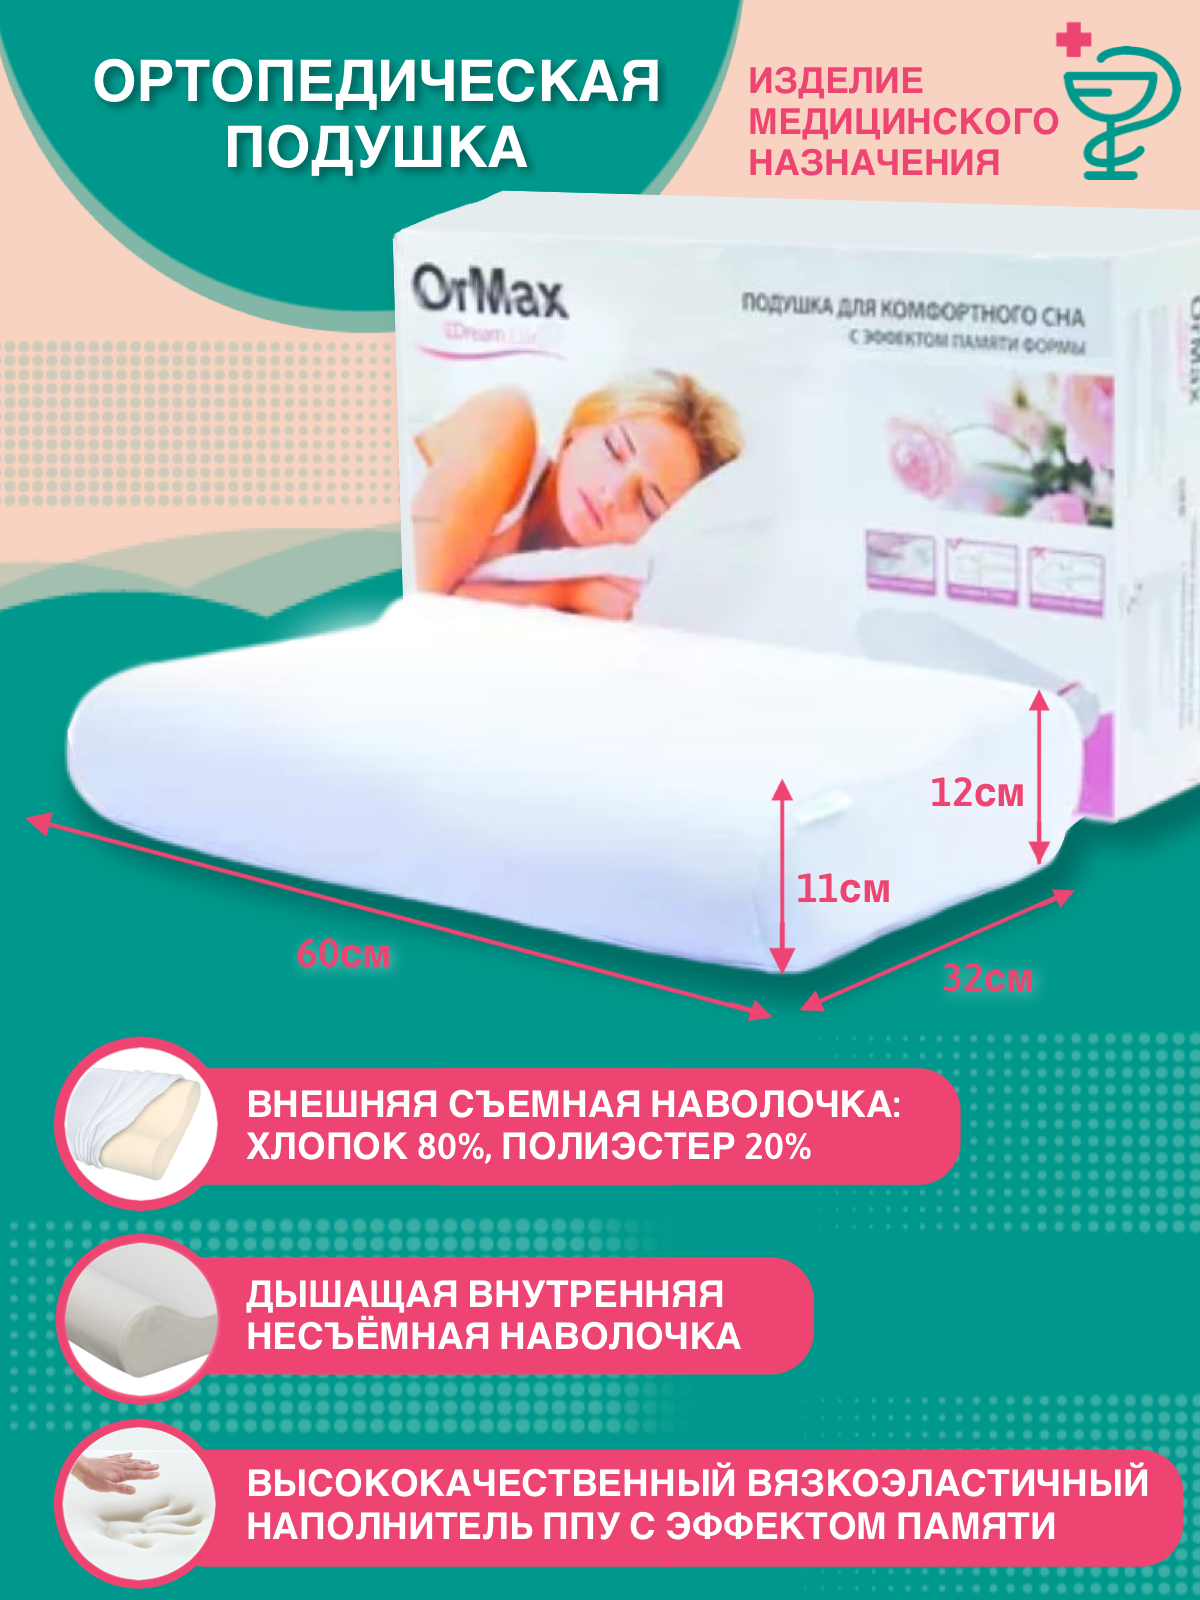 Ортопедическая подушка ORMAX DREAM LUX